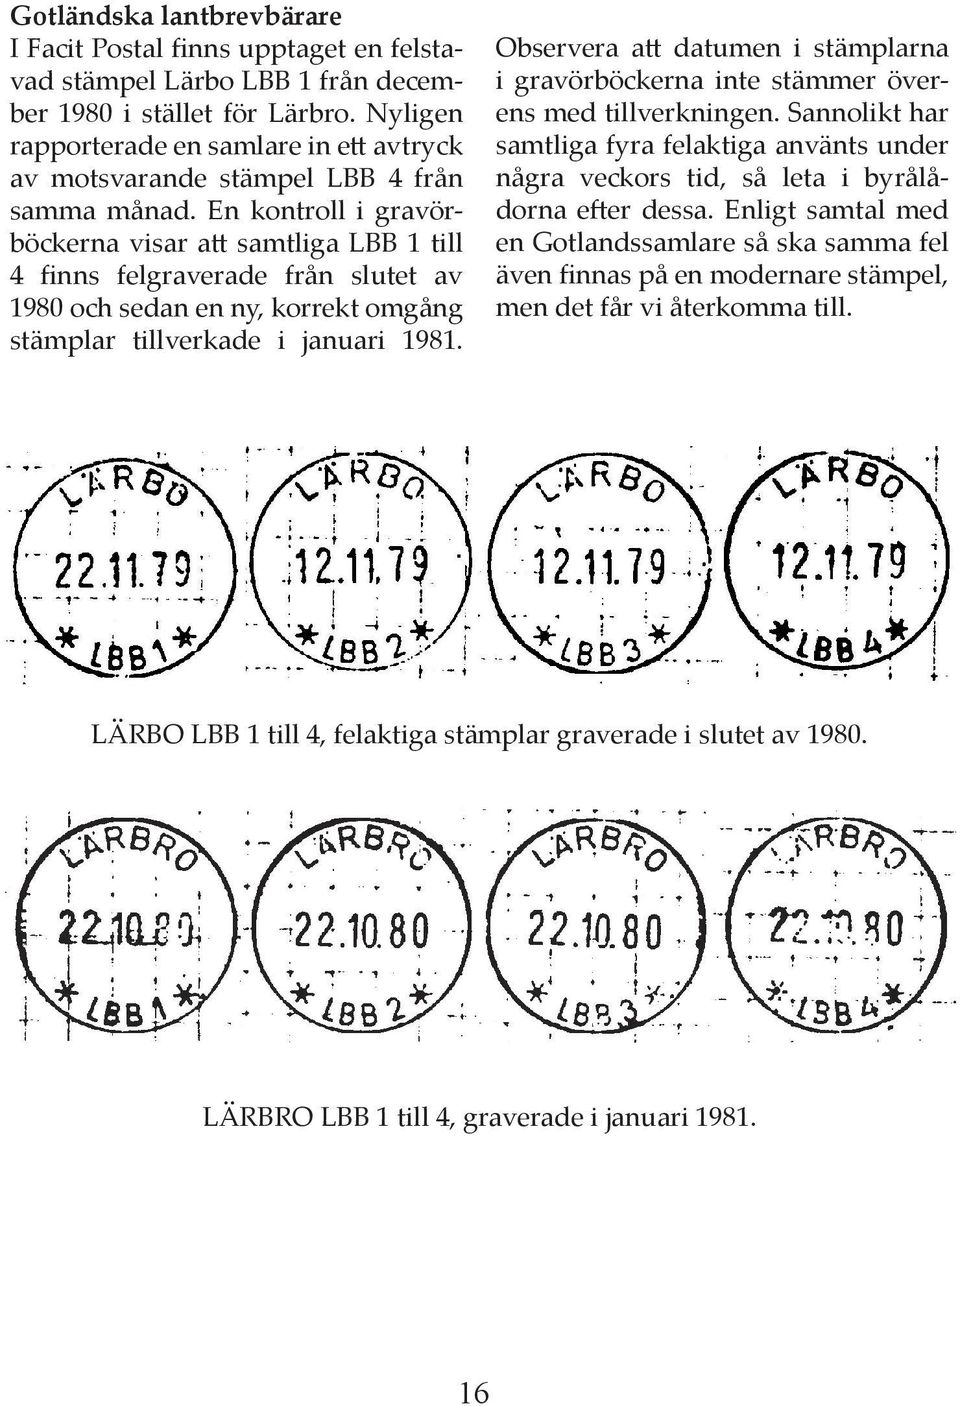 En kontroll i gravörböckerna visar a samtliga LBB 1 till 4 finns felgraverade från slutet av 1980 och sedan en ny, korrekt omgång stämplar tillverkade i januari 1981.